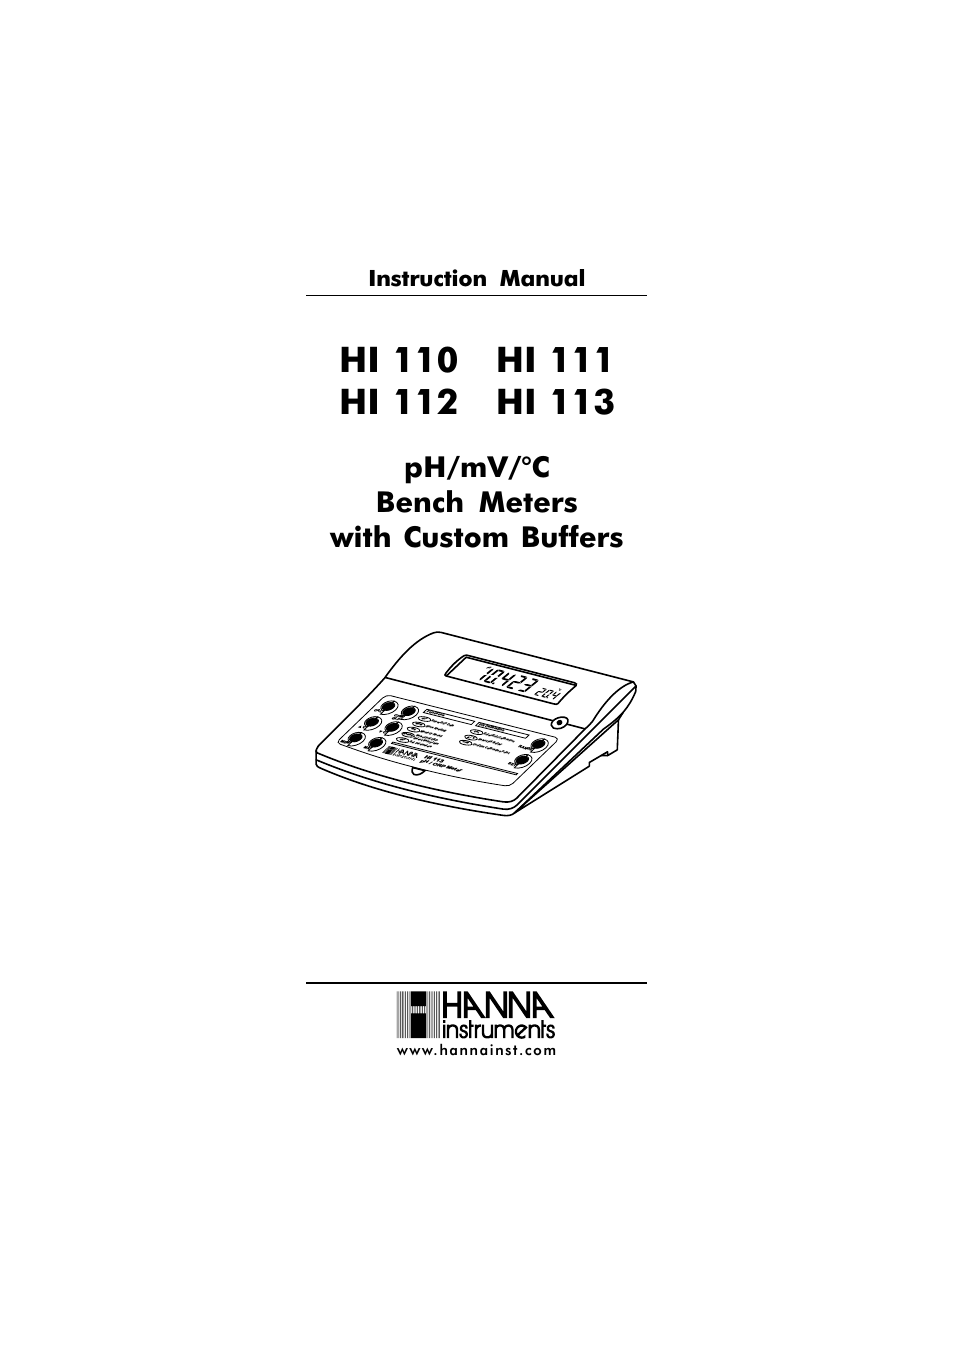 HI 112